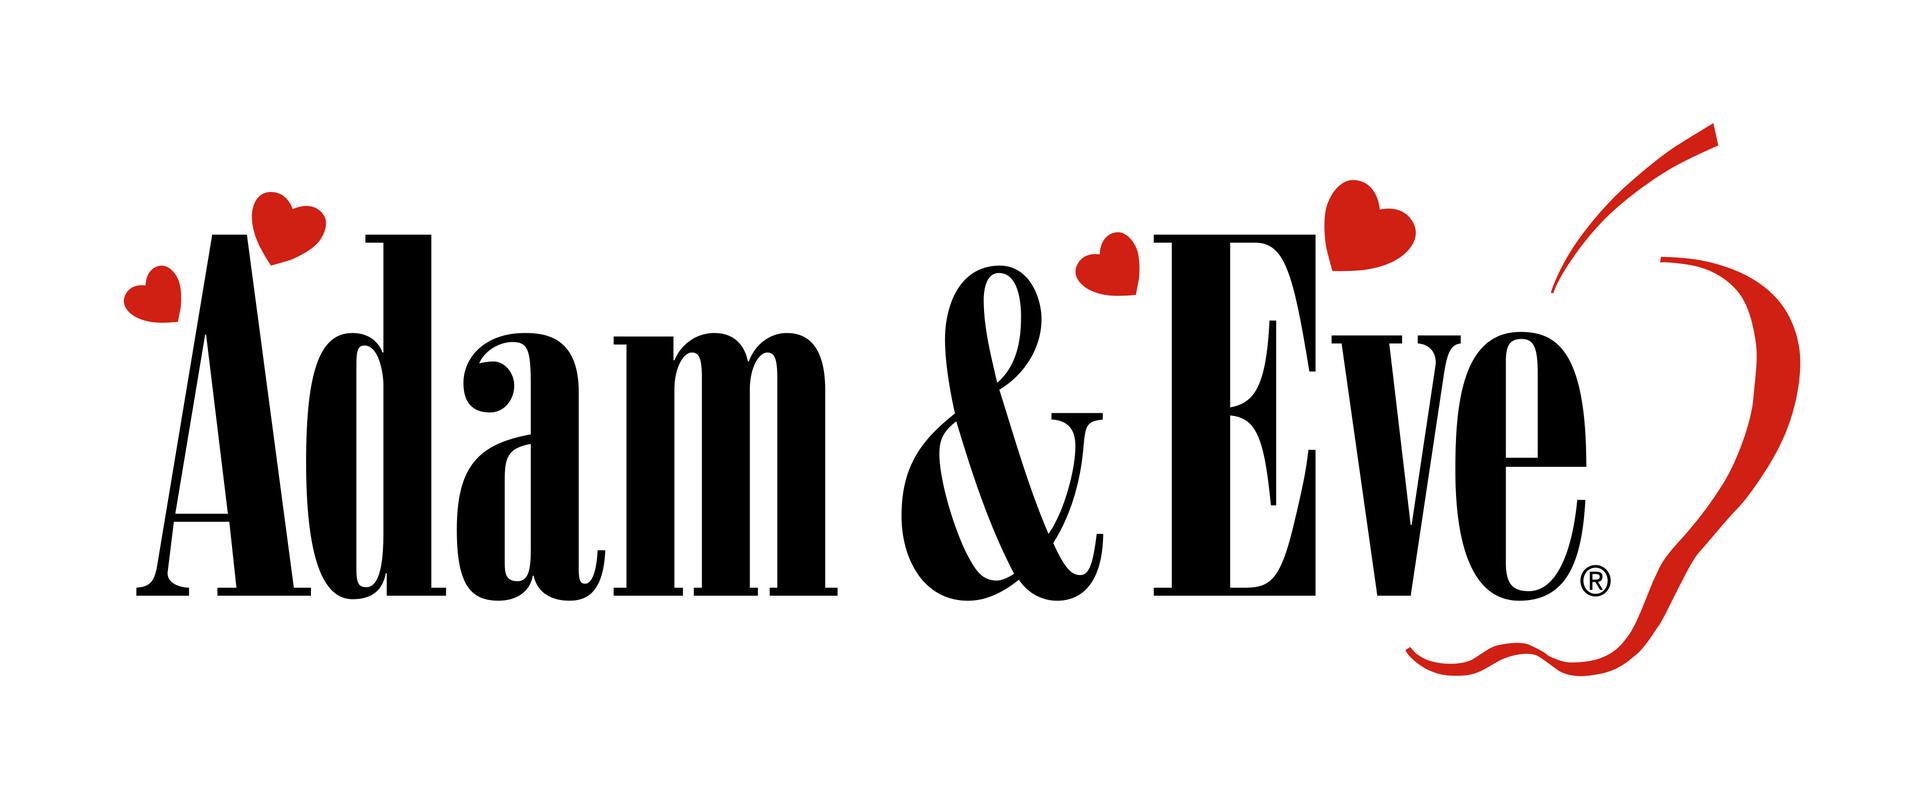 Adam & Eve Kdam Eve 